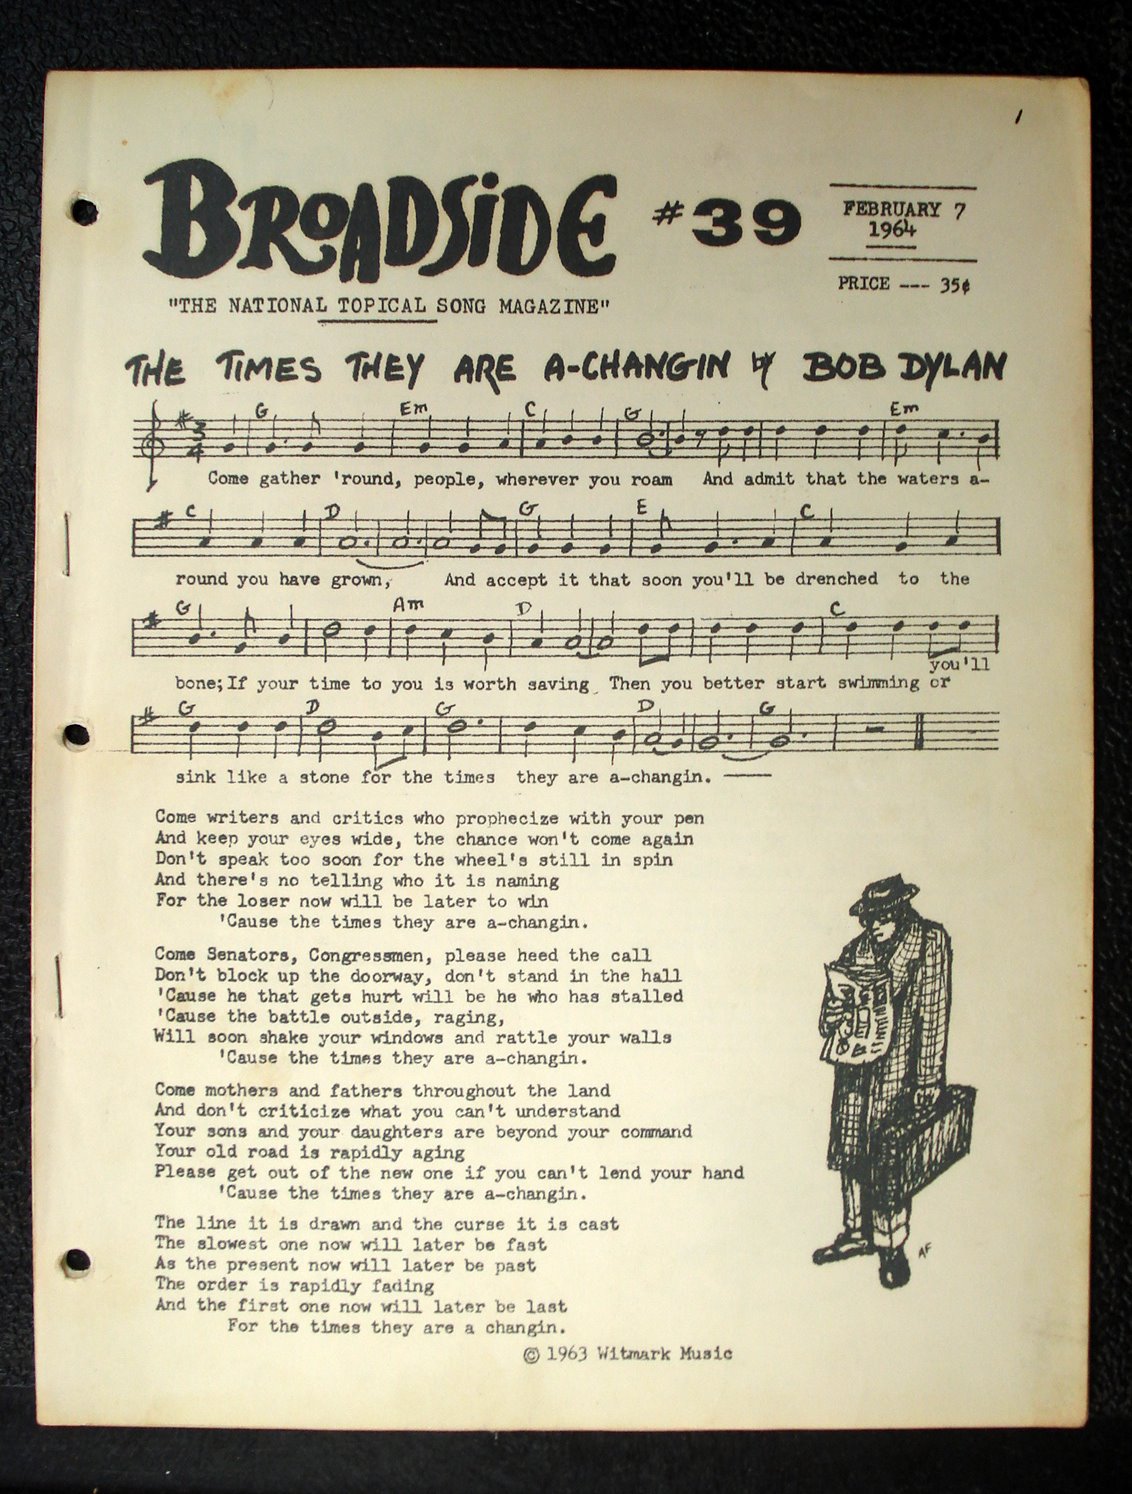 Broadside magazine